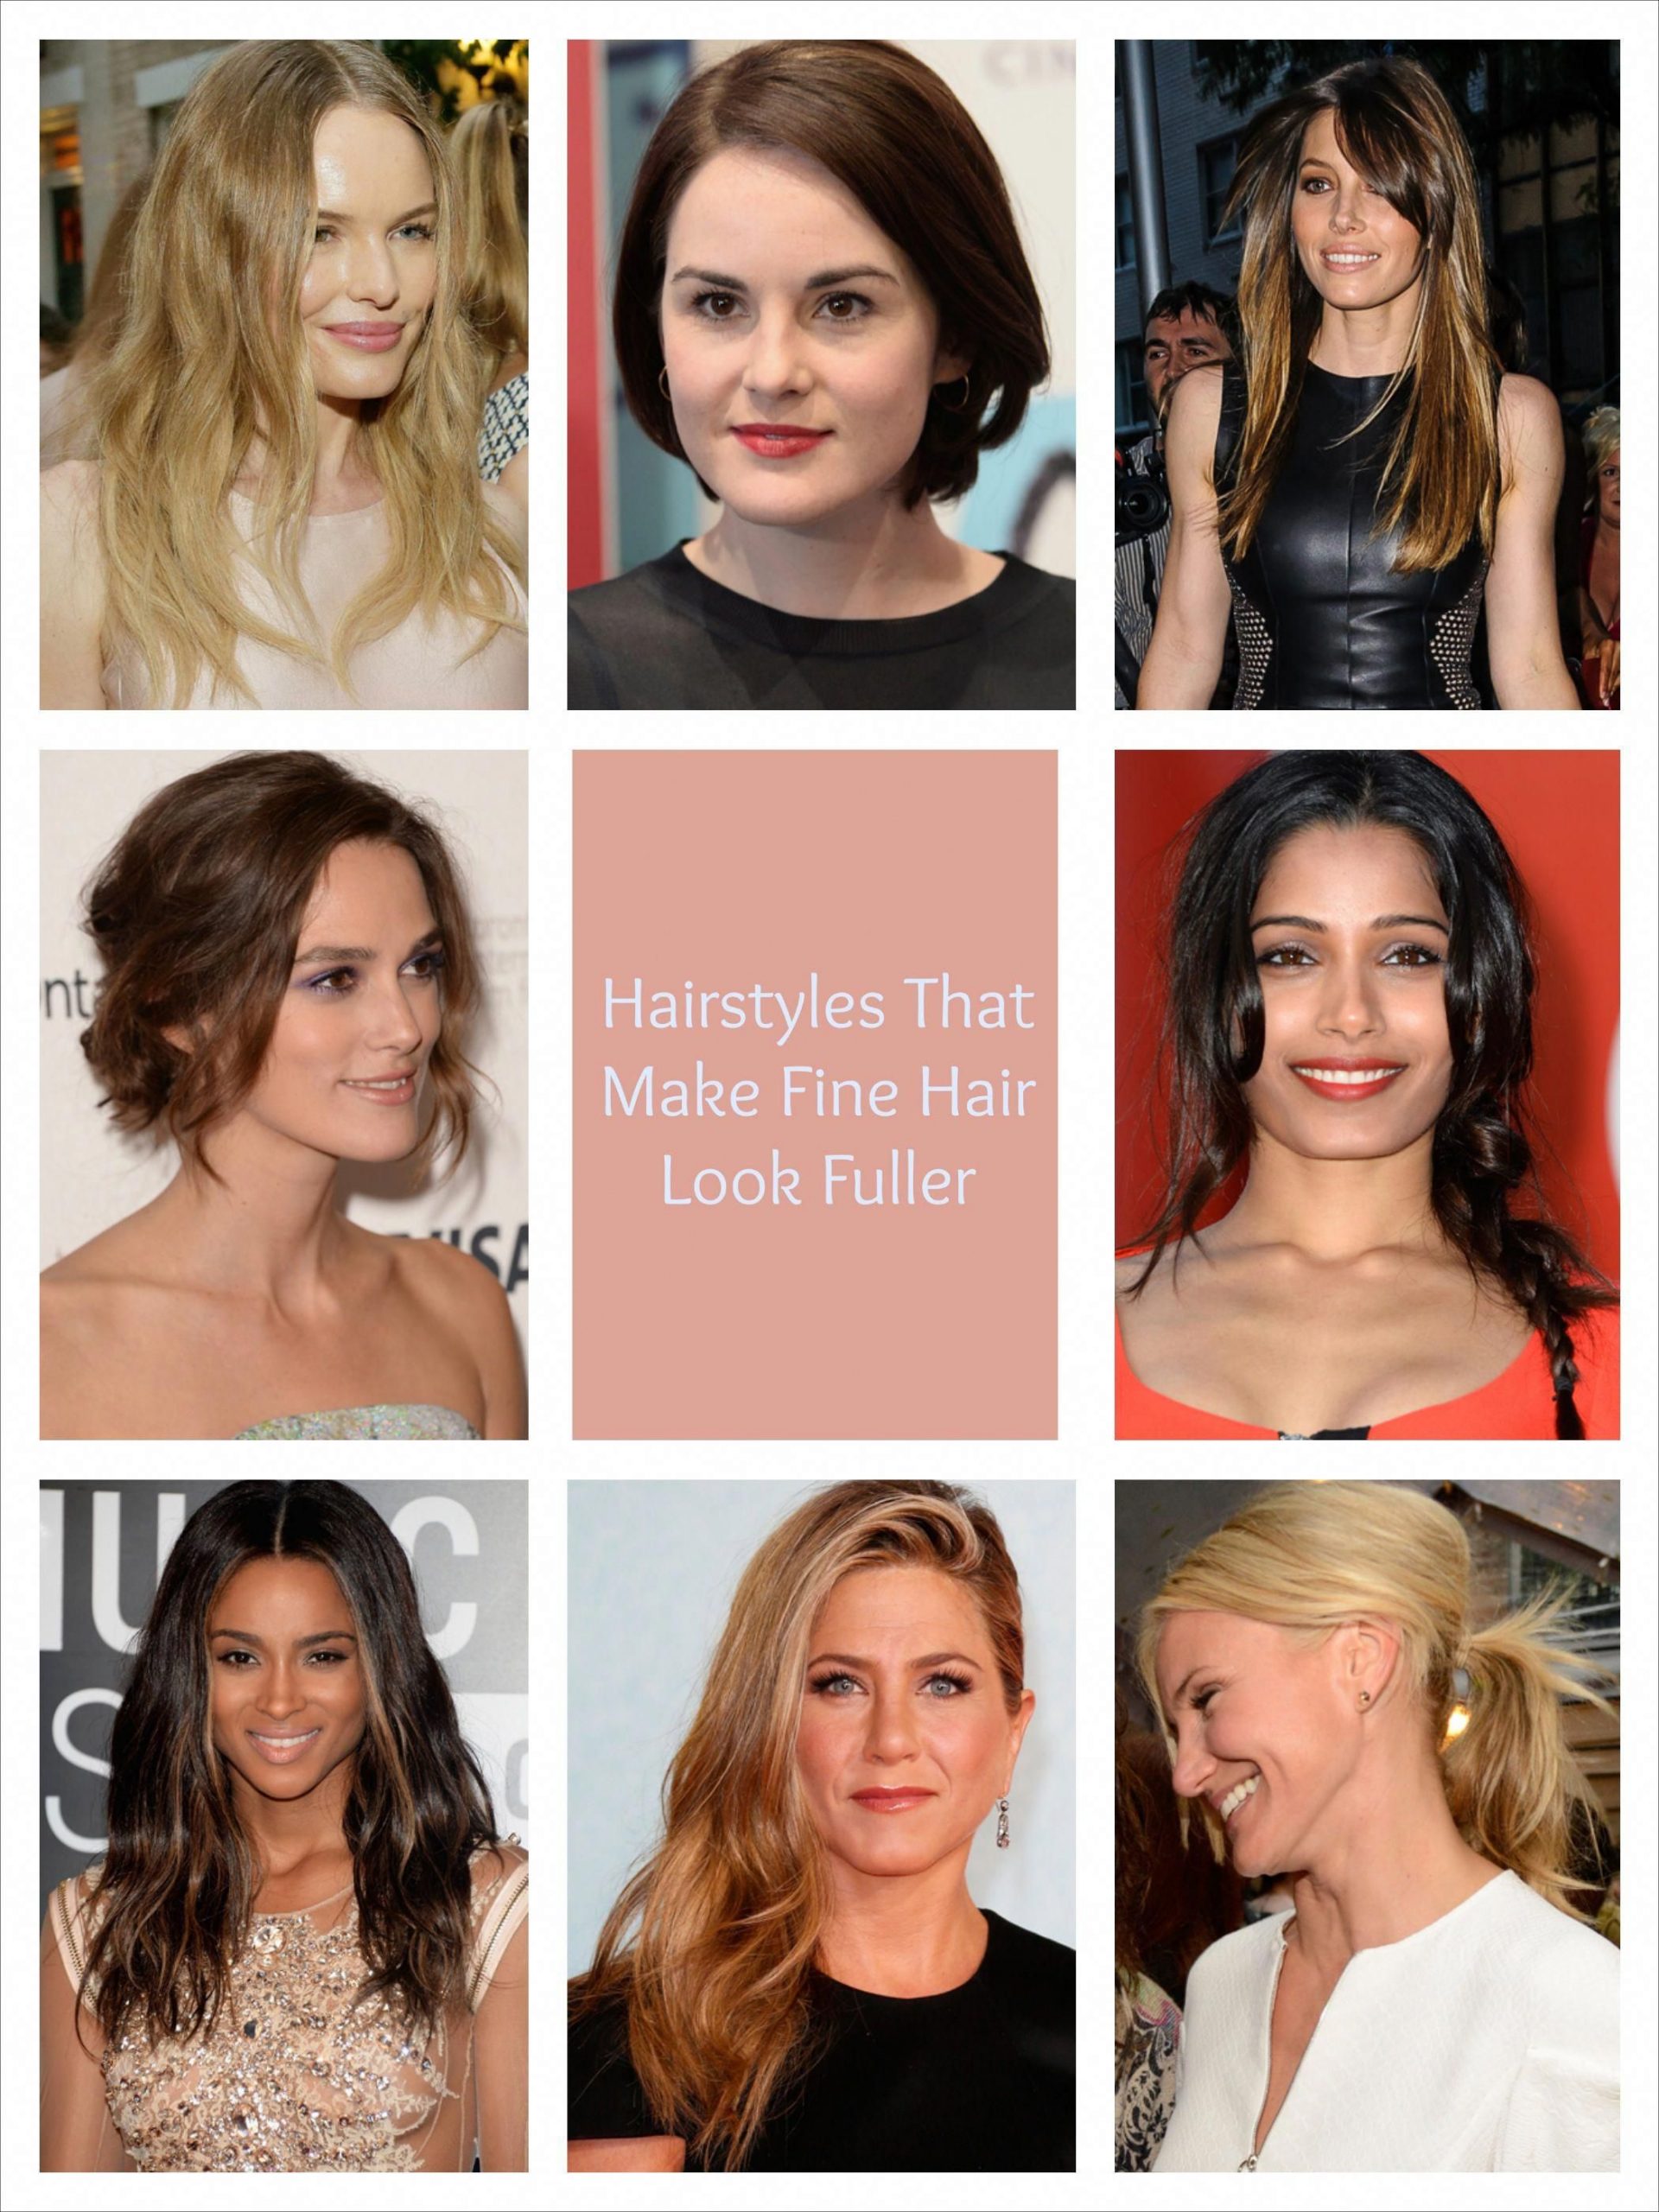 Hairstyles That Make Fine Hair Look Fuller